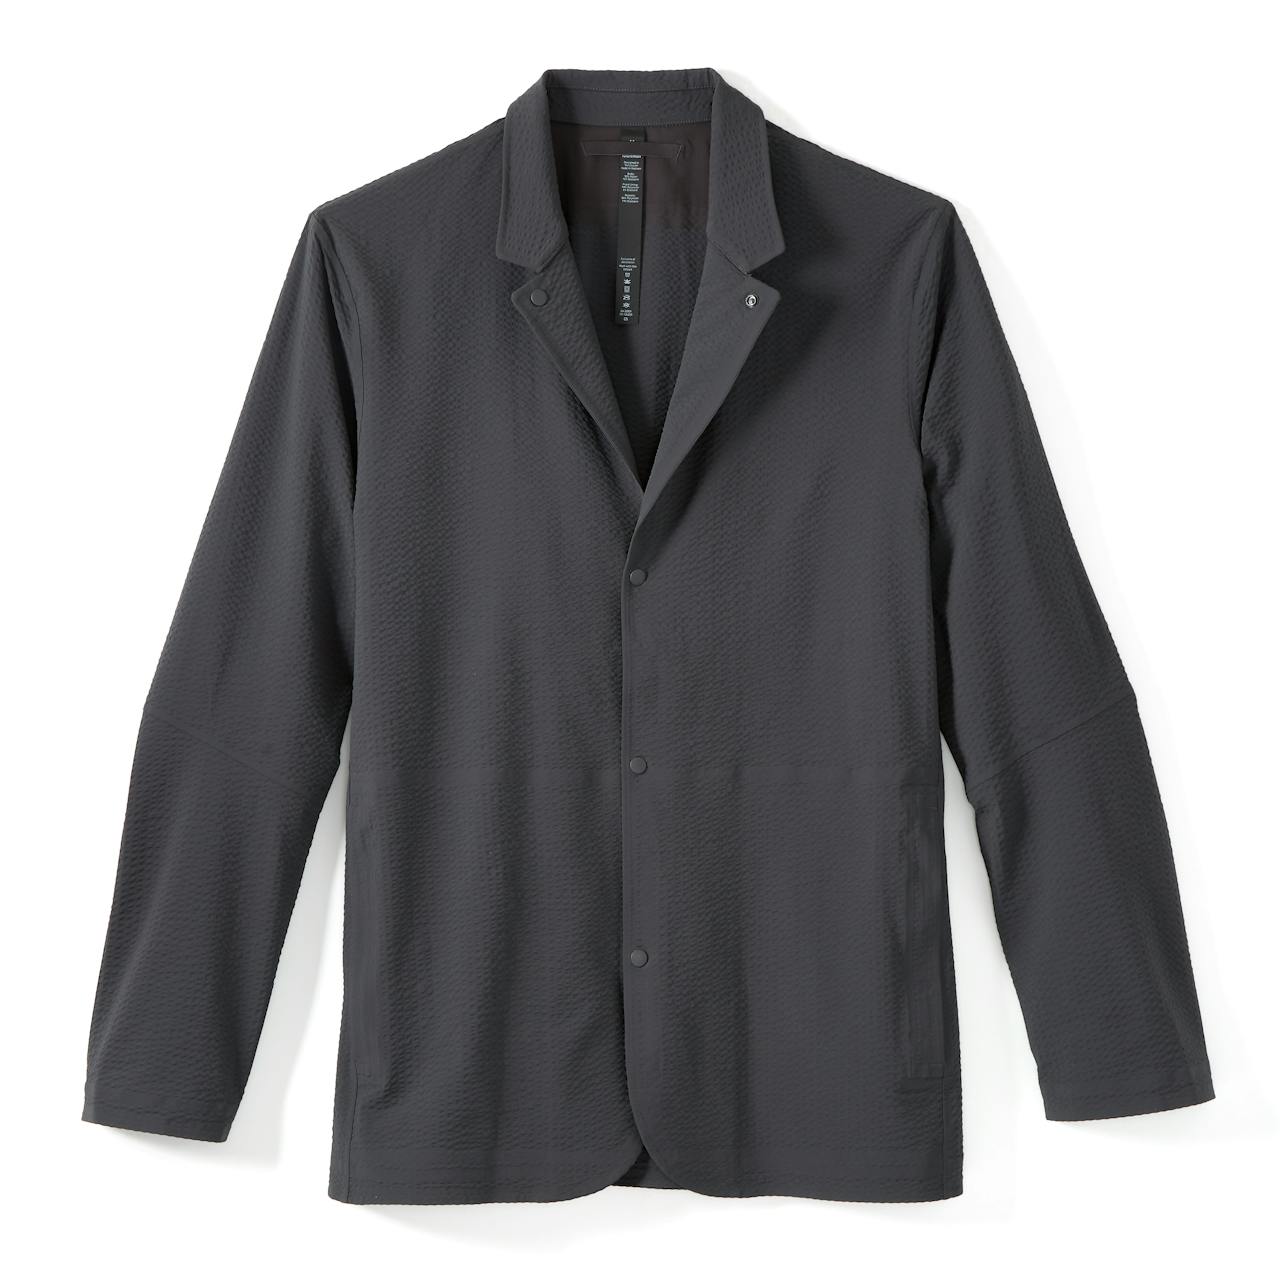 lululemon athletica, Jackets & Coats, Rare Lululemon Black Urbanite Moto  Asymmetrical Blazer Jacket Size 4